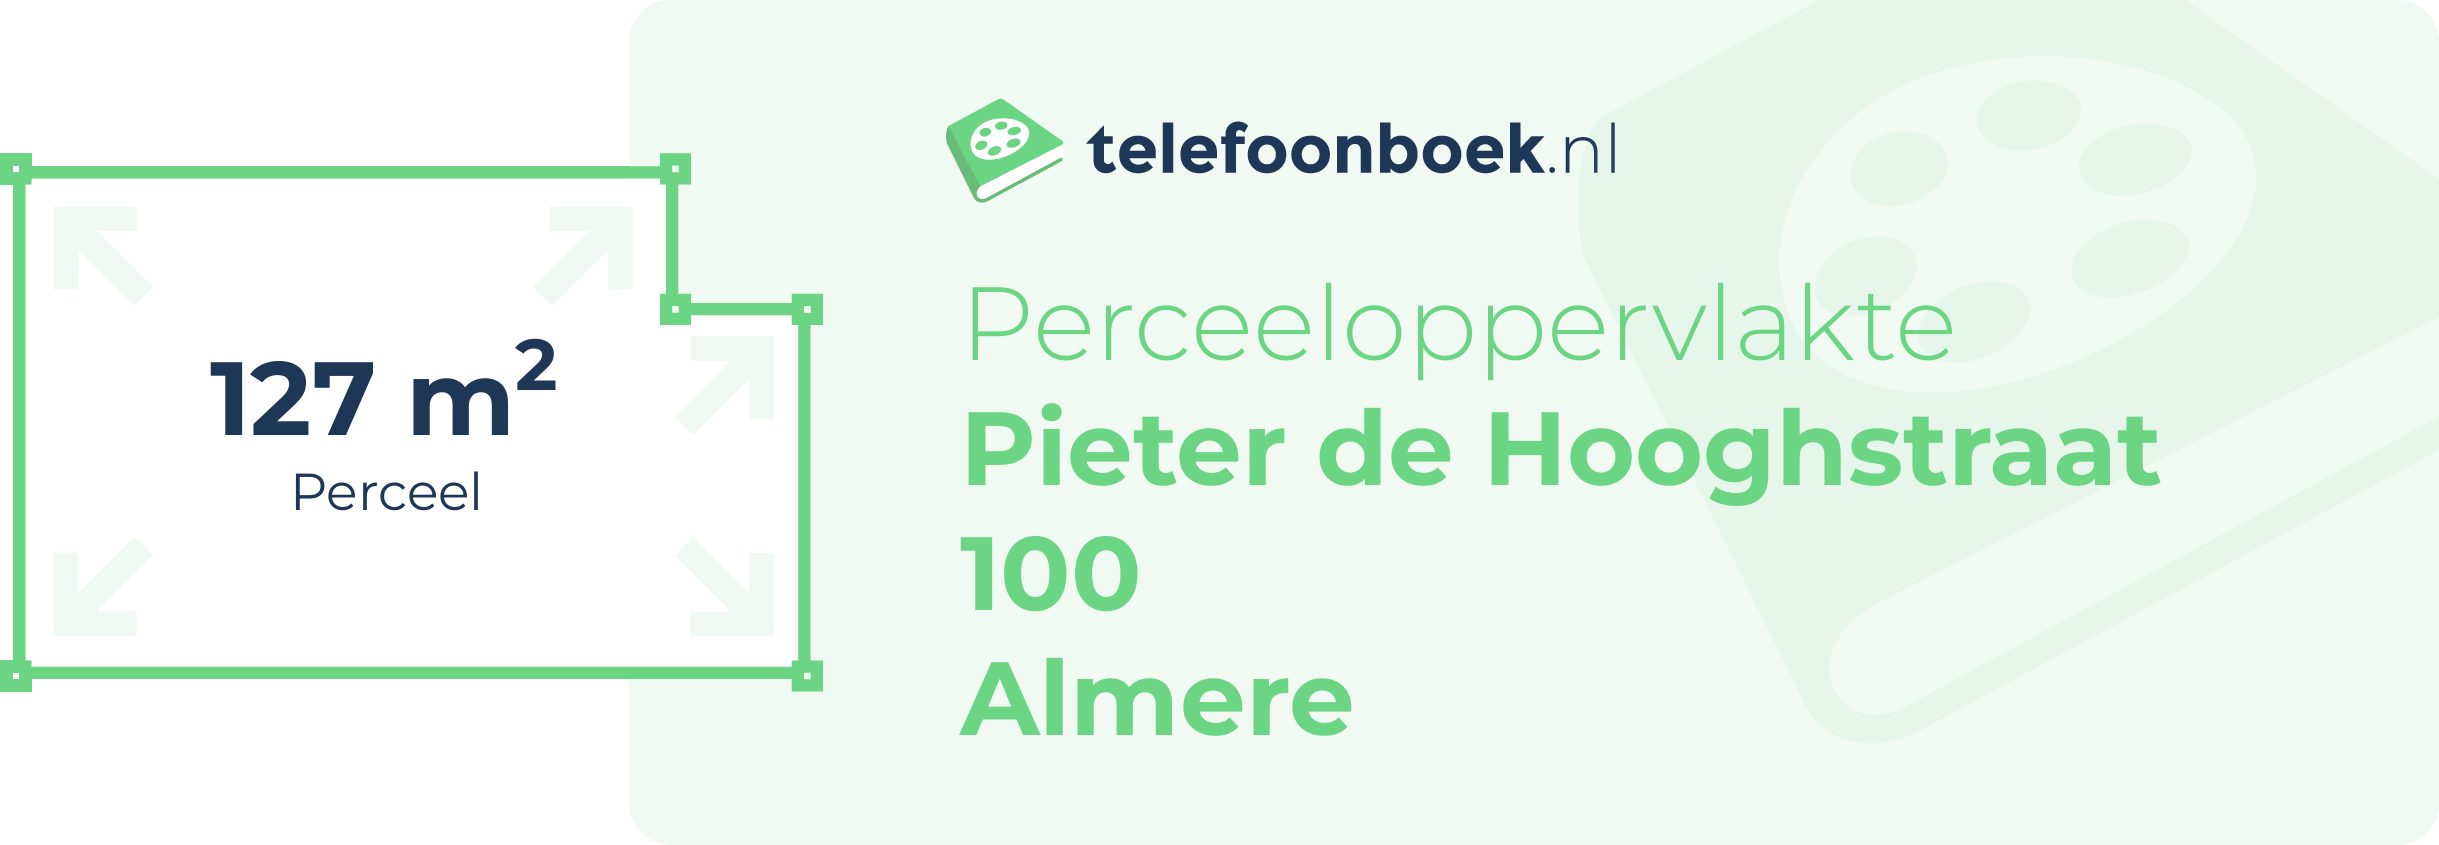 Perceeloppervlakte Pieter De Hooghstraat 100 Almere